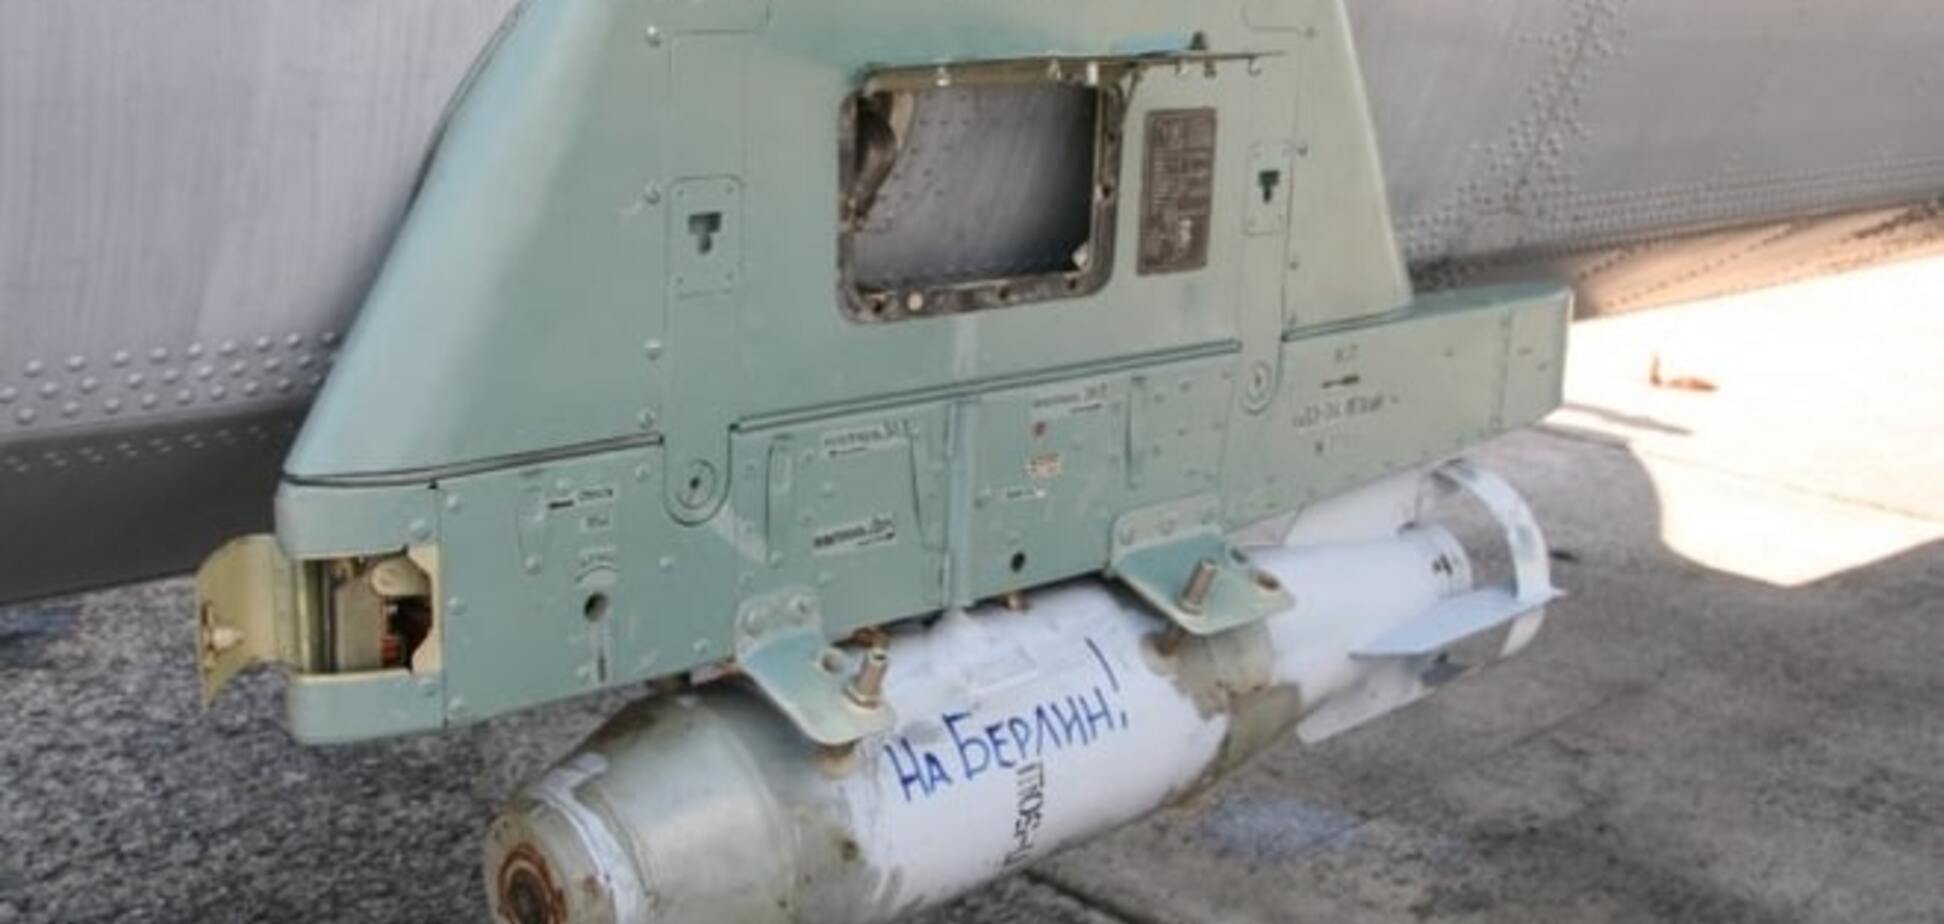 Немцы в шоке! Российские агрессоры на авиаучениях использовали бомбы с надписью 'На Берлин': фотофакт